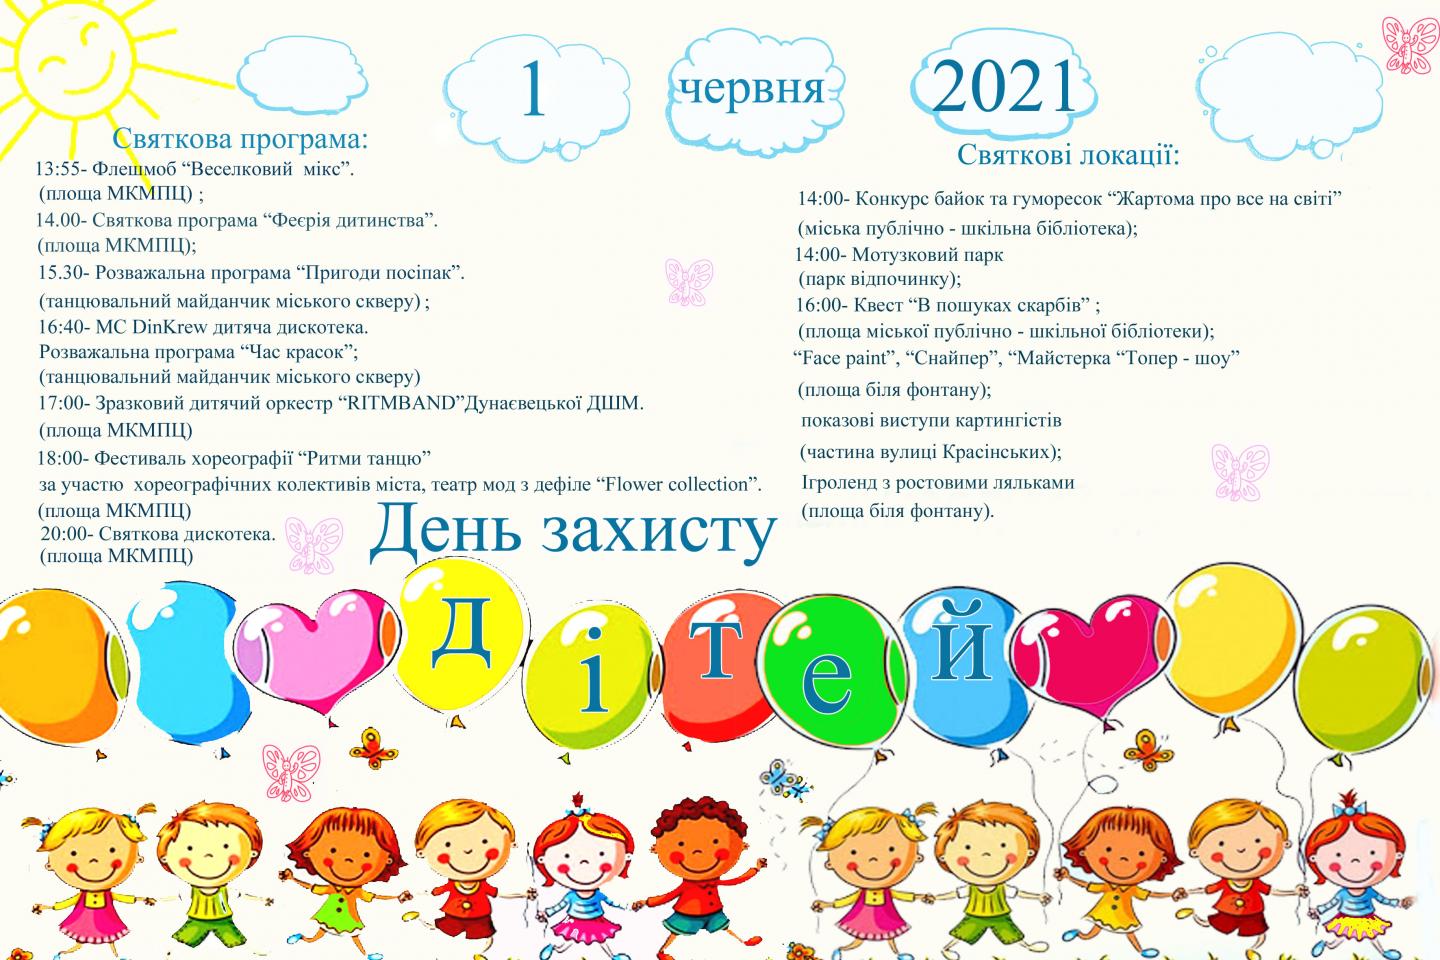 http://dunrada.gov.ua/uploadfile/archive_news/2021/05/28/2021-05-28_3163/images/images-66410.jpg